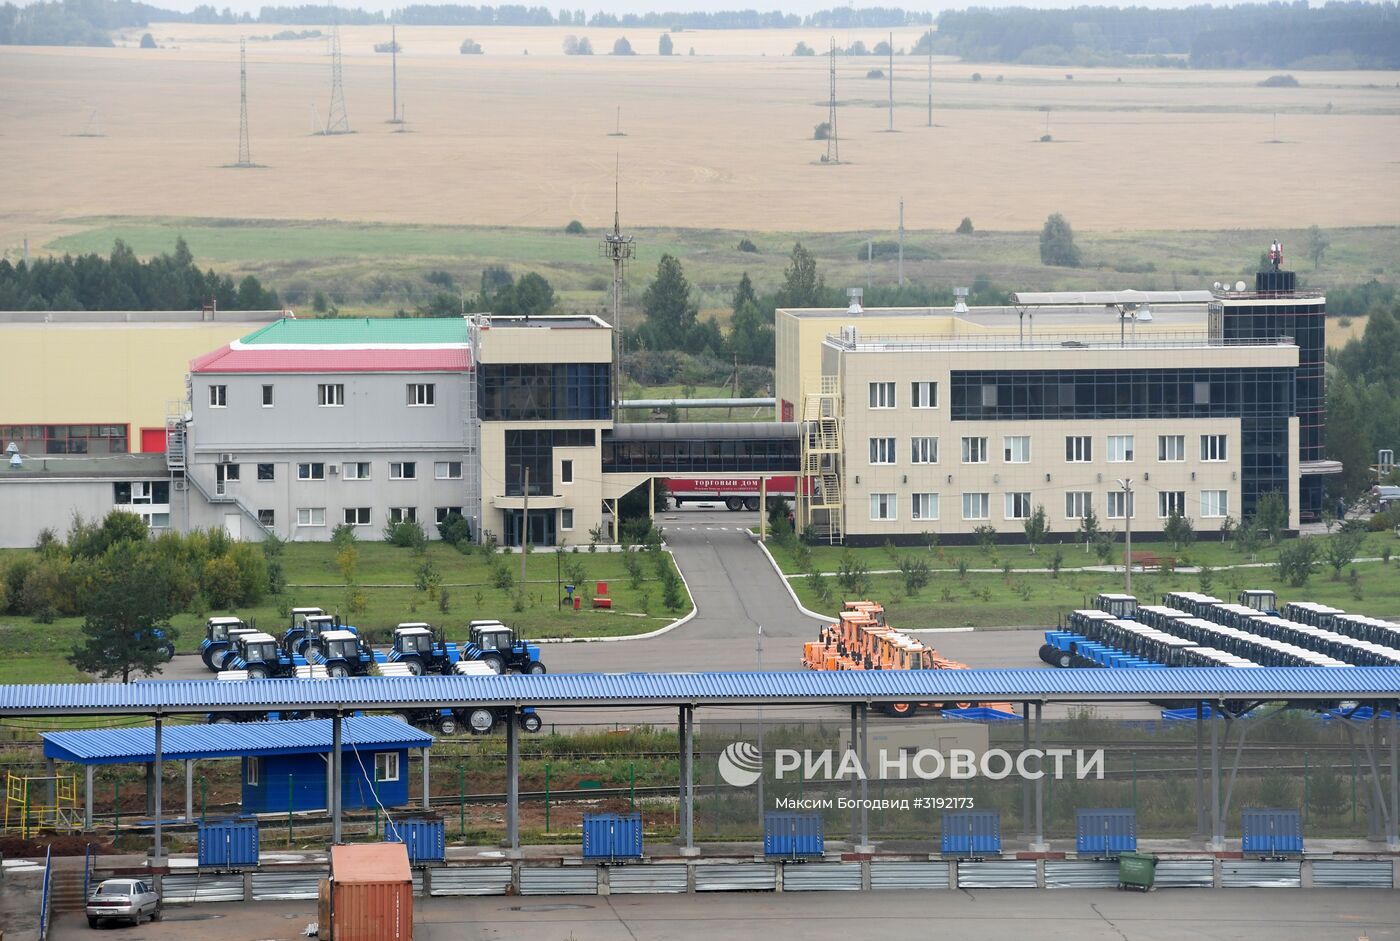 Открытие завода компании "Драйлок Текнолоджиз" в Татарстане